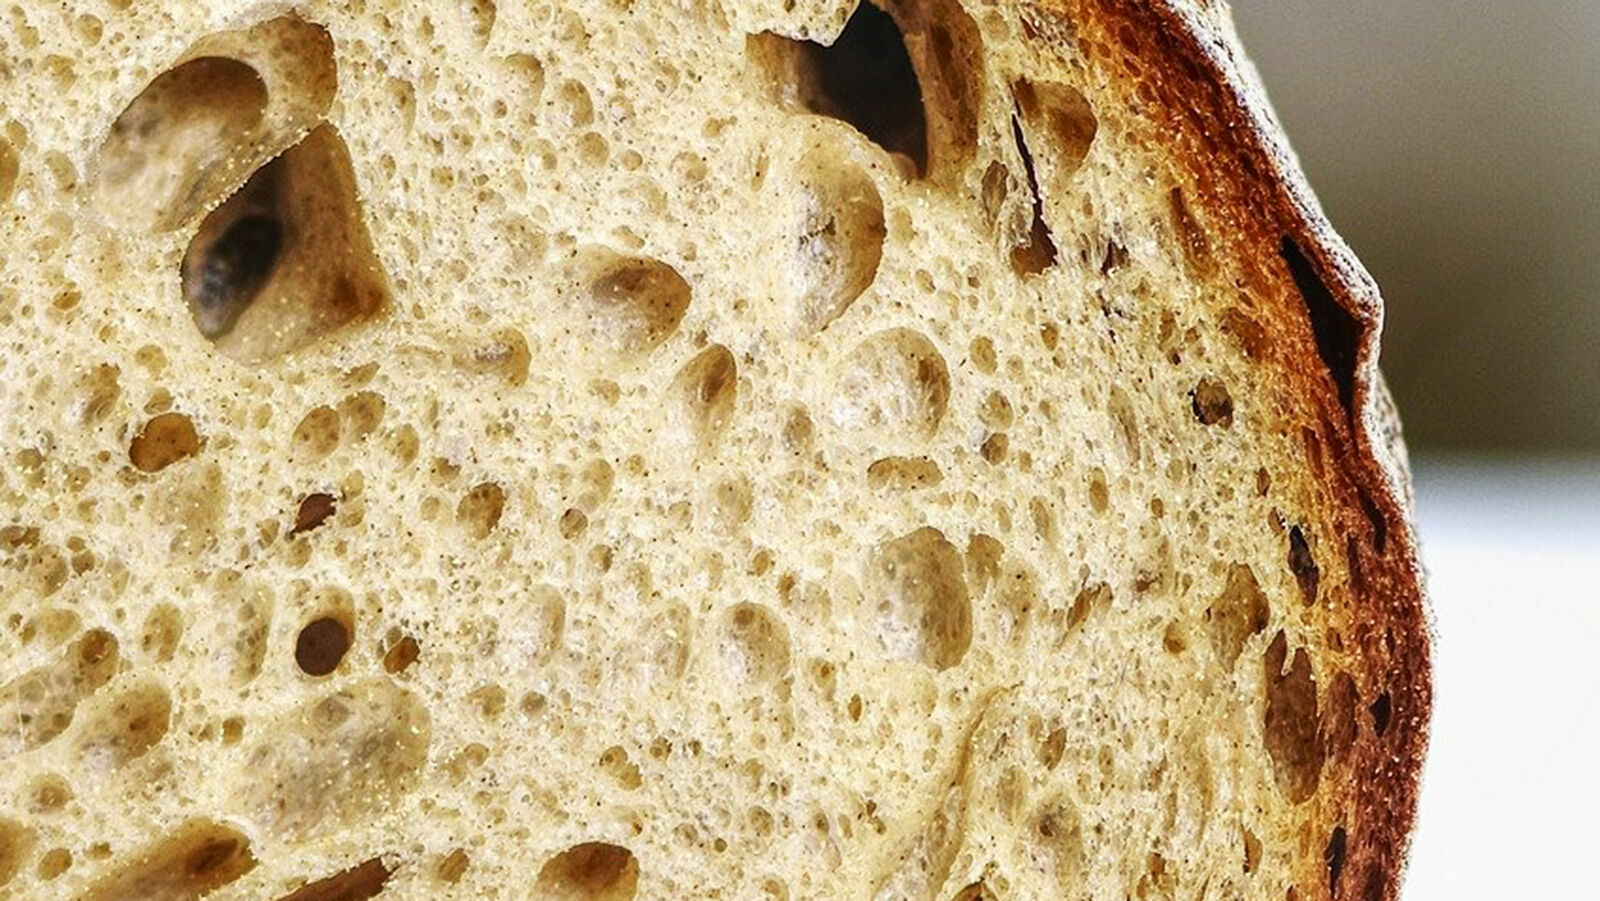 Хлебозавод в Геленджике хотел продавать «блокадный хлеб», но одумался